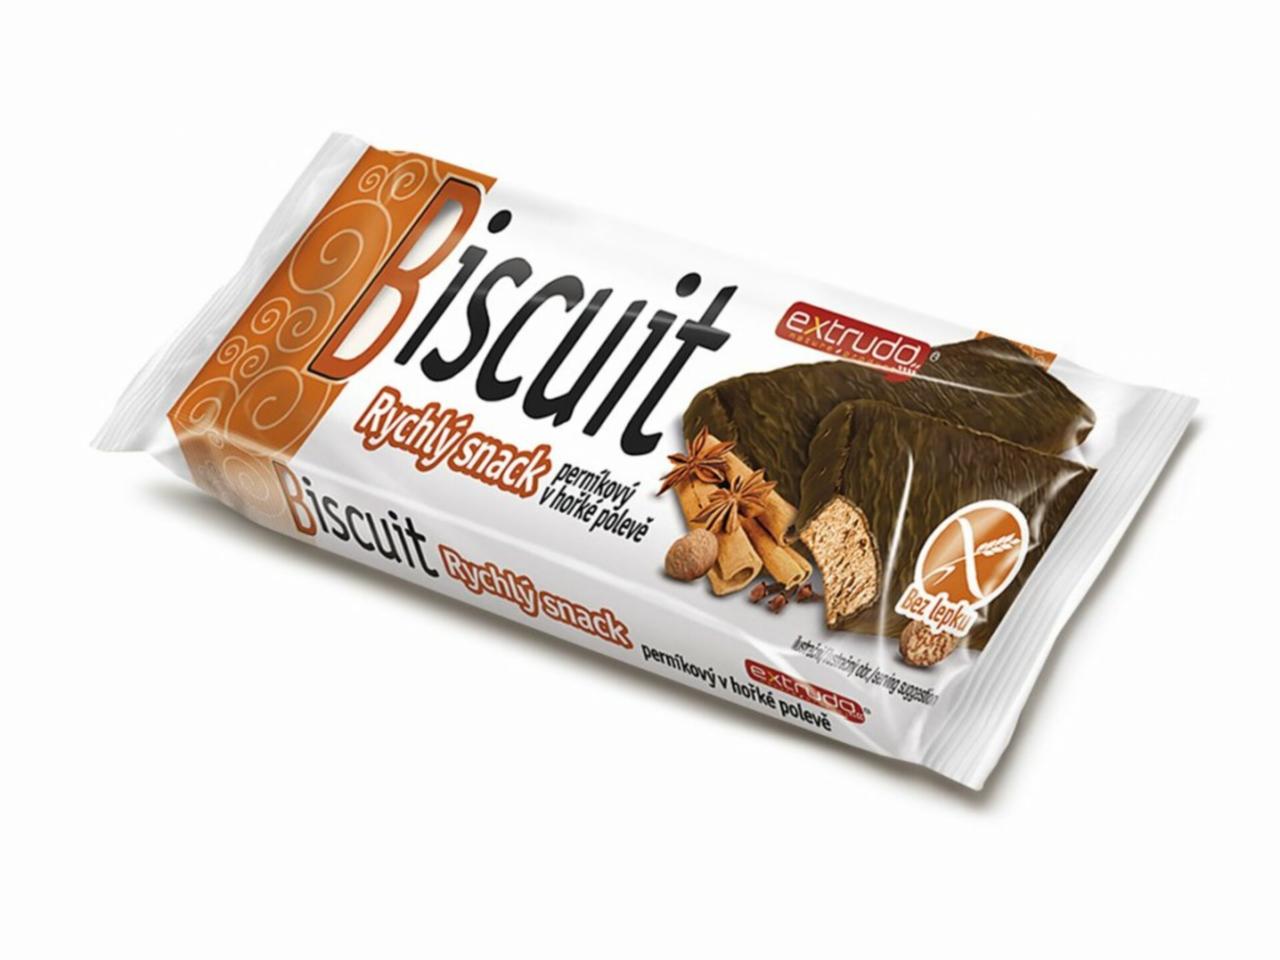 Fotografie - Extrudo Biscuit Rychlý snack perníkový v hořké polevě